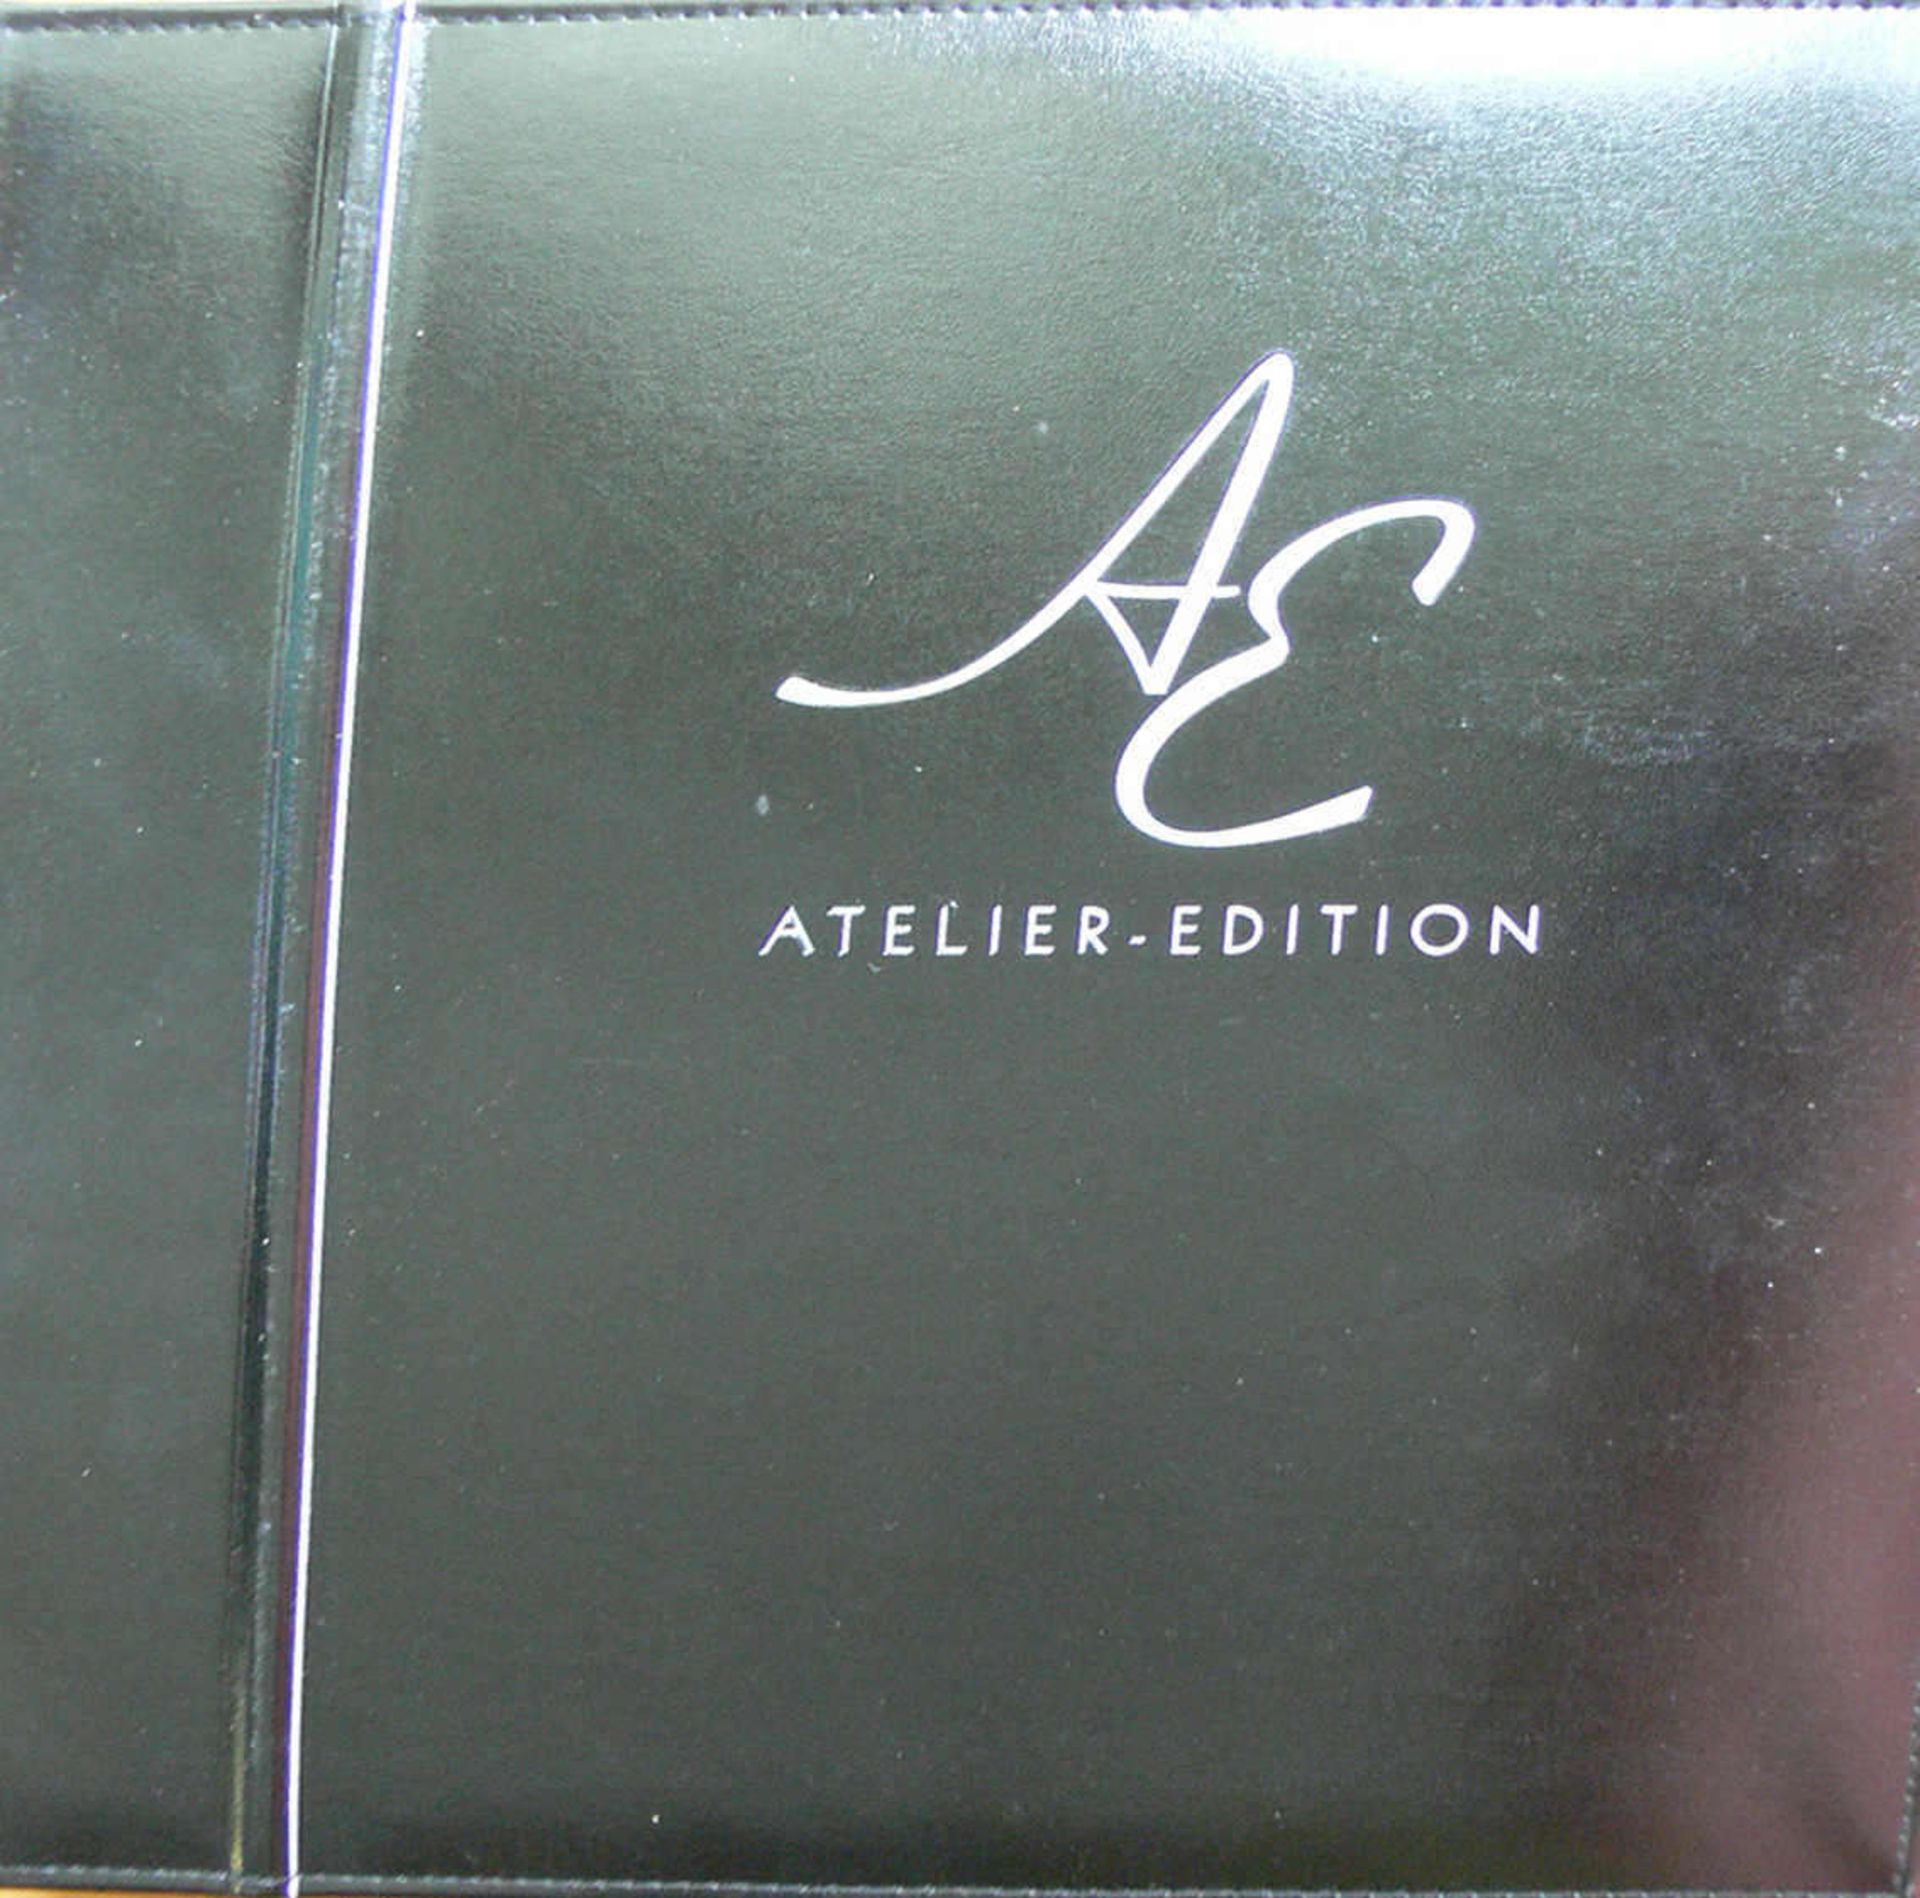 BRD, zwei Abo - Alben: 1. Atelier Edition 2002. 2. 10 Jahre deutsche Einheit. Germany, two